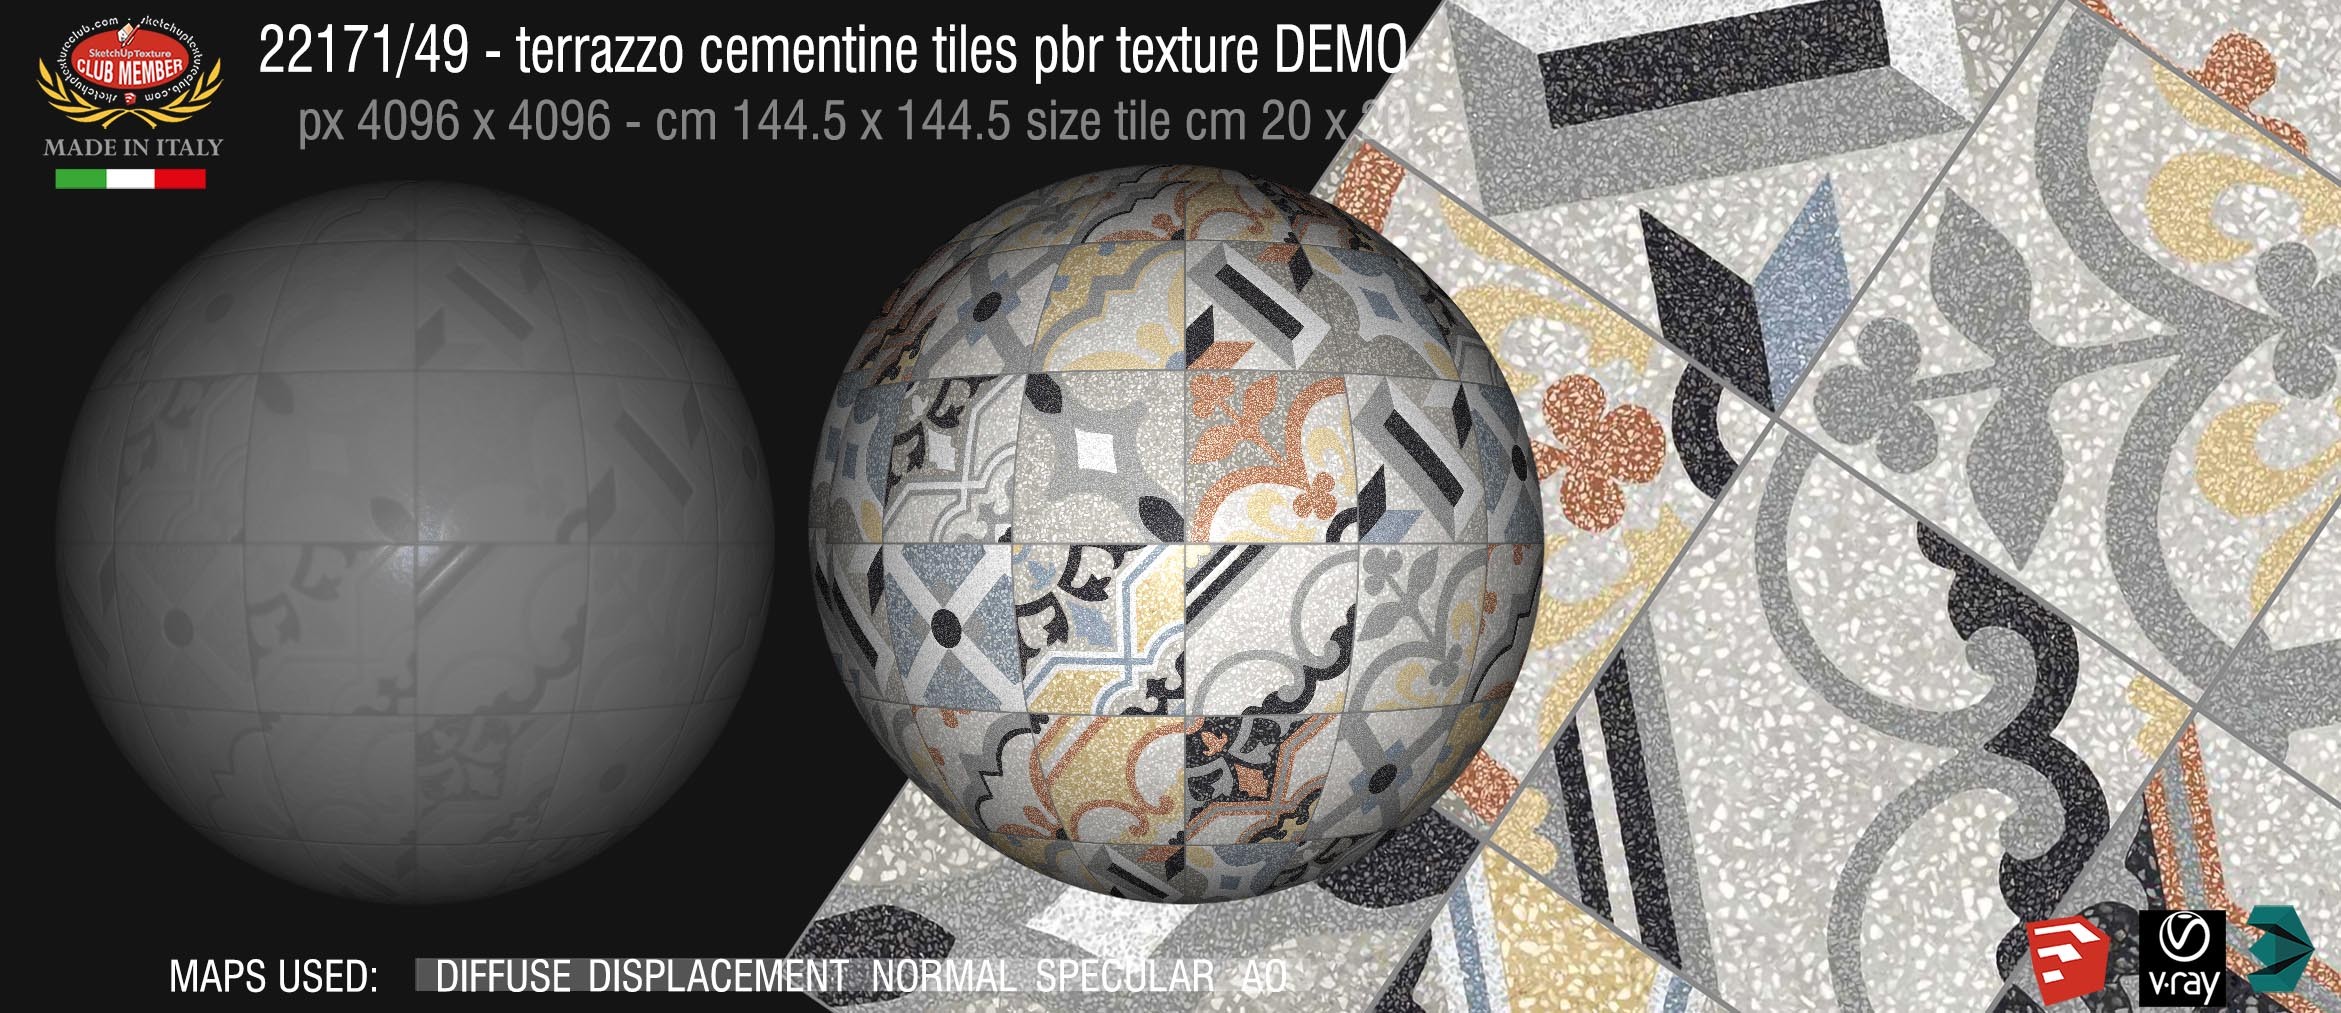 22171/49terrazzo floor cementine style pbr texture seamless DEMO -  D_Segni Scaglie 20x20 size by Marazzi